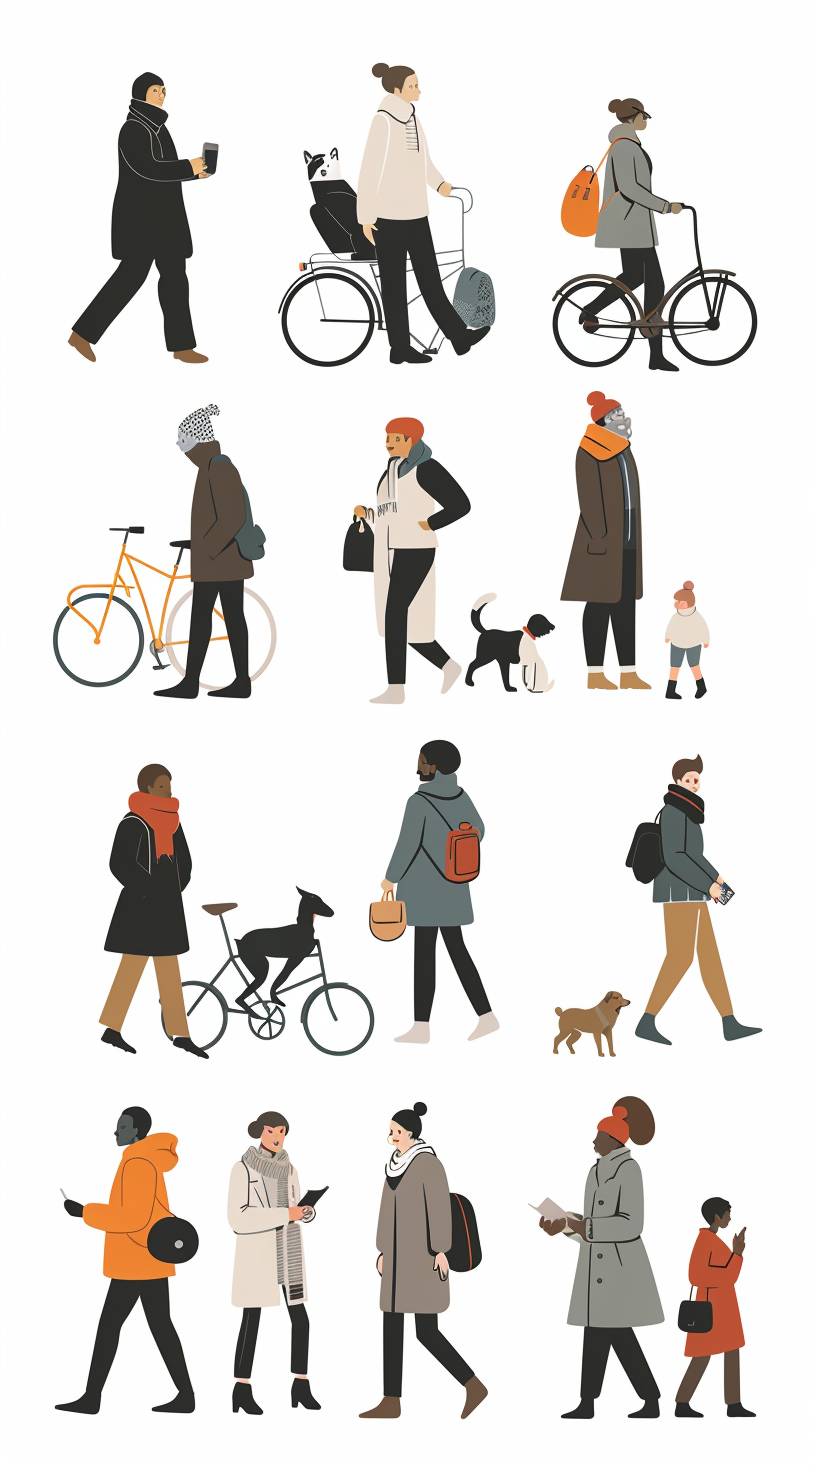 各種活動をする様々な人々のフラットなイラストです。例えば、傘と犬を連れて散歩したり、自転車に乗ったり、本を読んだりします。人々は年齢、性別、肌の色に多様性を持たせています。背景は白色で、それによって人物とその行動が際立っています。文字はありませんので、注意は人物の姿に集中することができます。すべての要素には、明瞭に対比するための単一の配色スキームがあります。フラットデザインとミニマリストデザインのスタイルで描かれています。